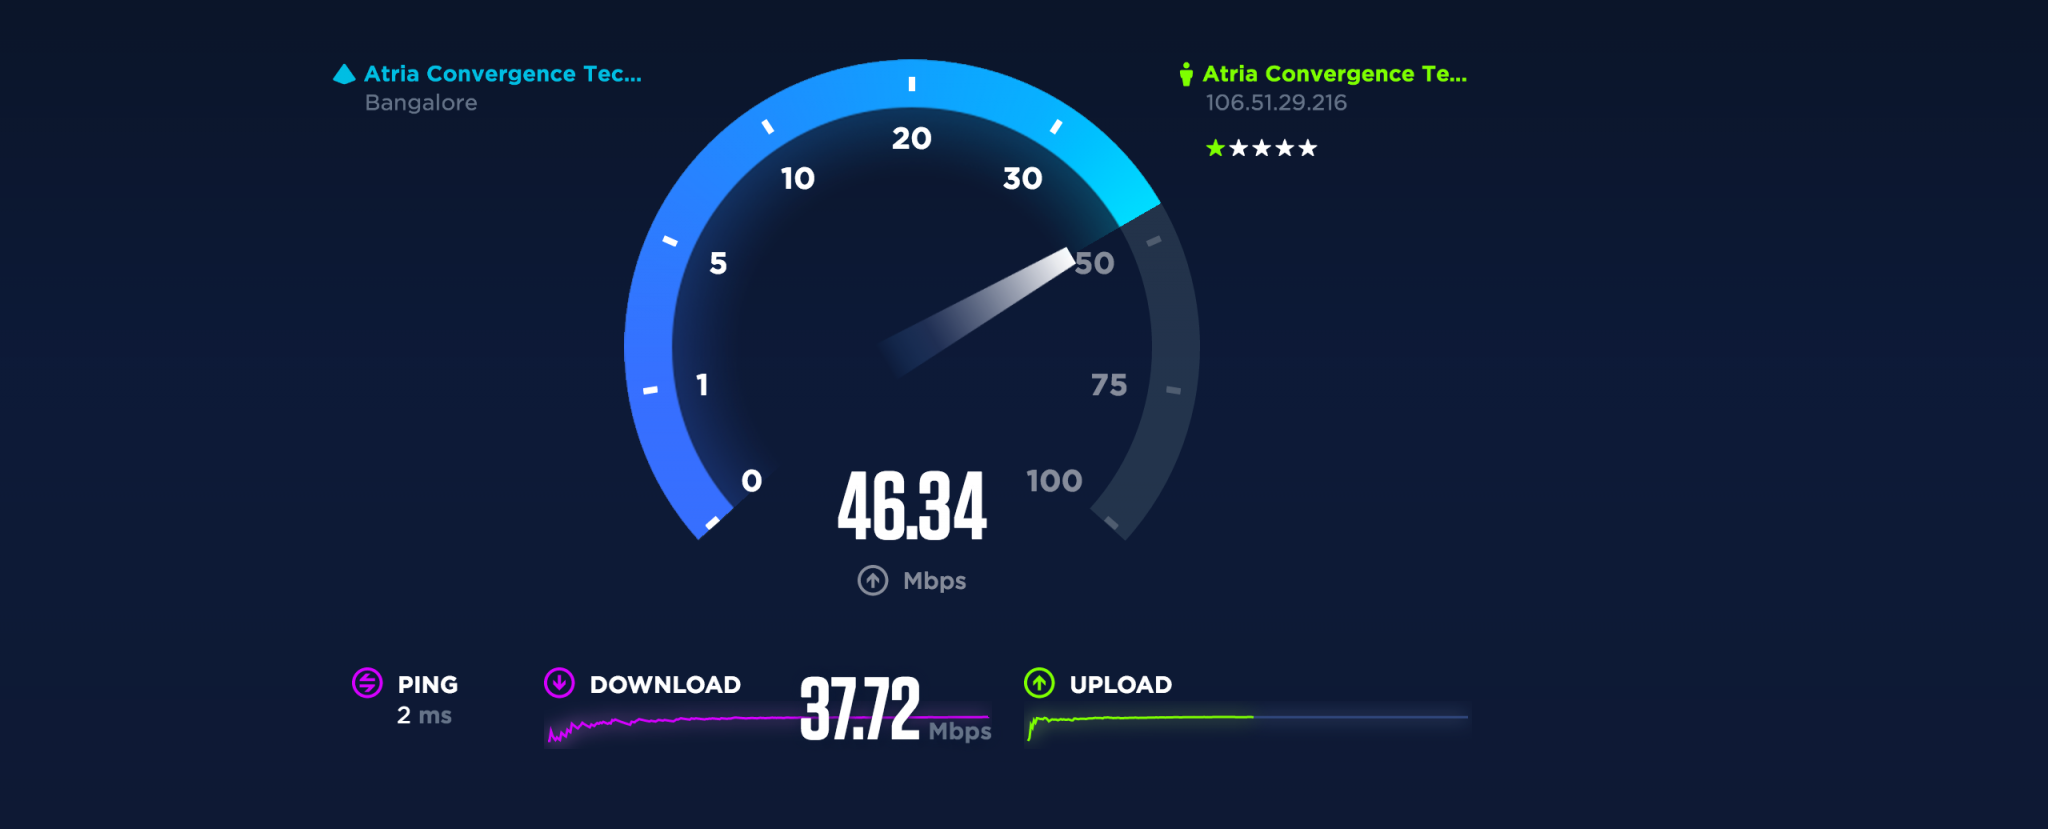 Скорость интернета новая. Скорость интернета. Тест скорости интернета. Спидтест скорости интернета. Низкая скорость интернета.